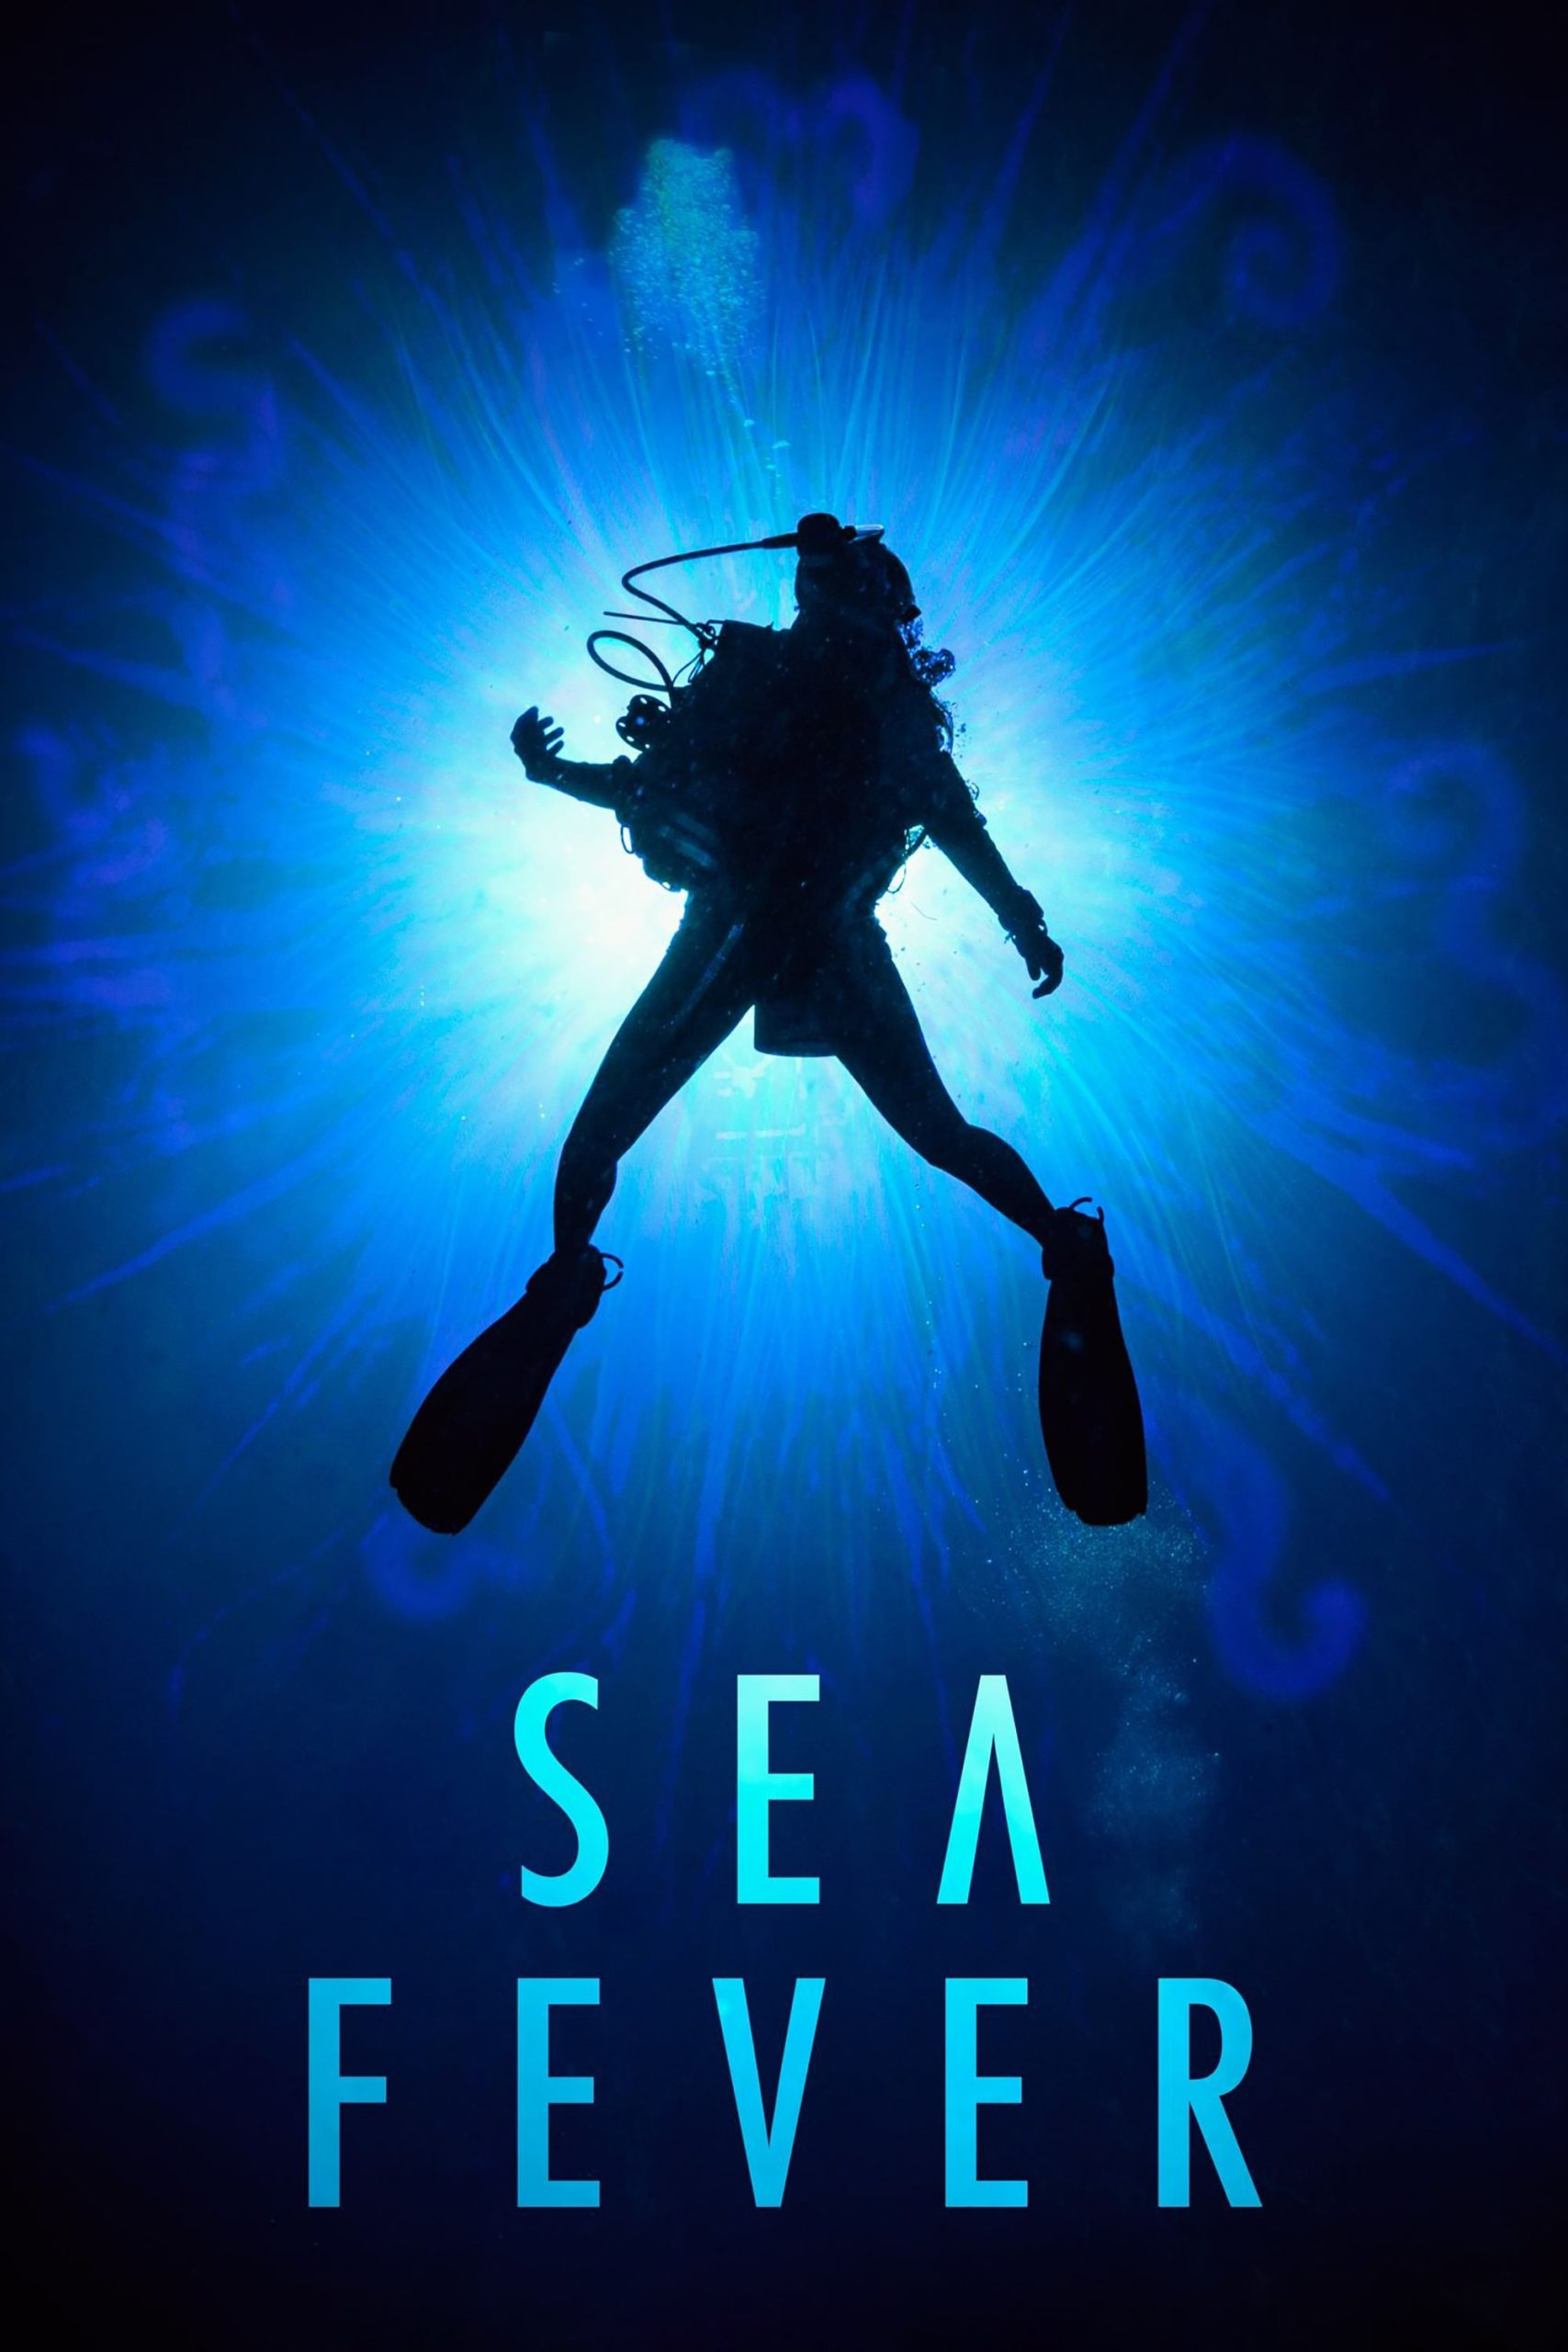 Poster de la película "Sea Fever"